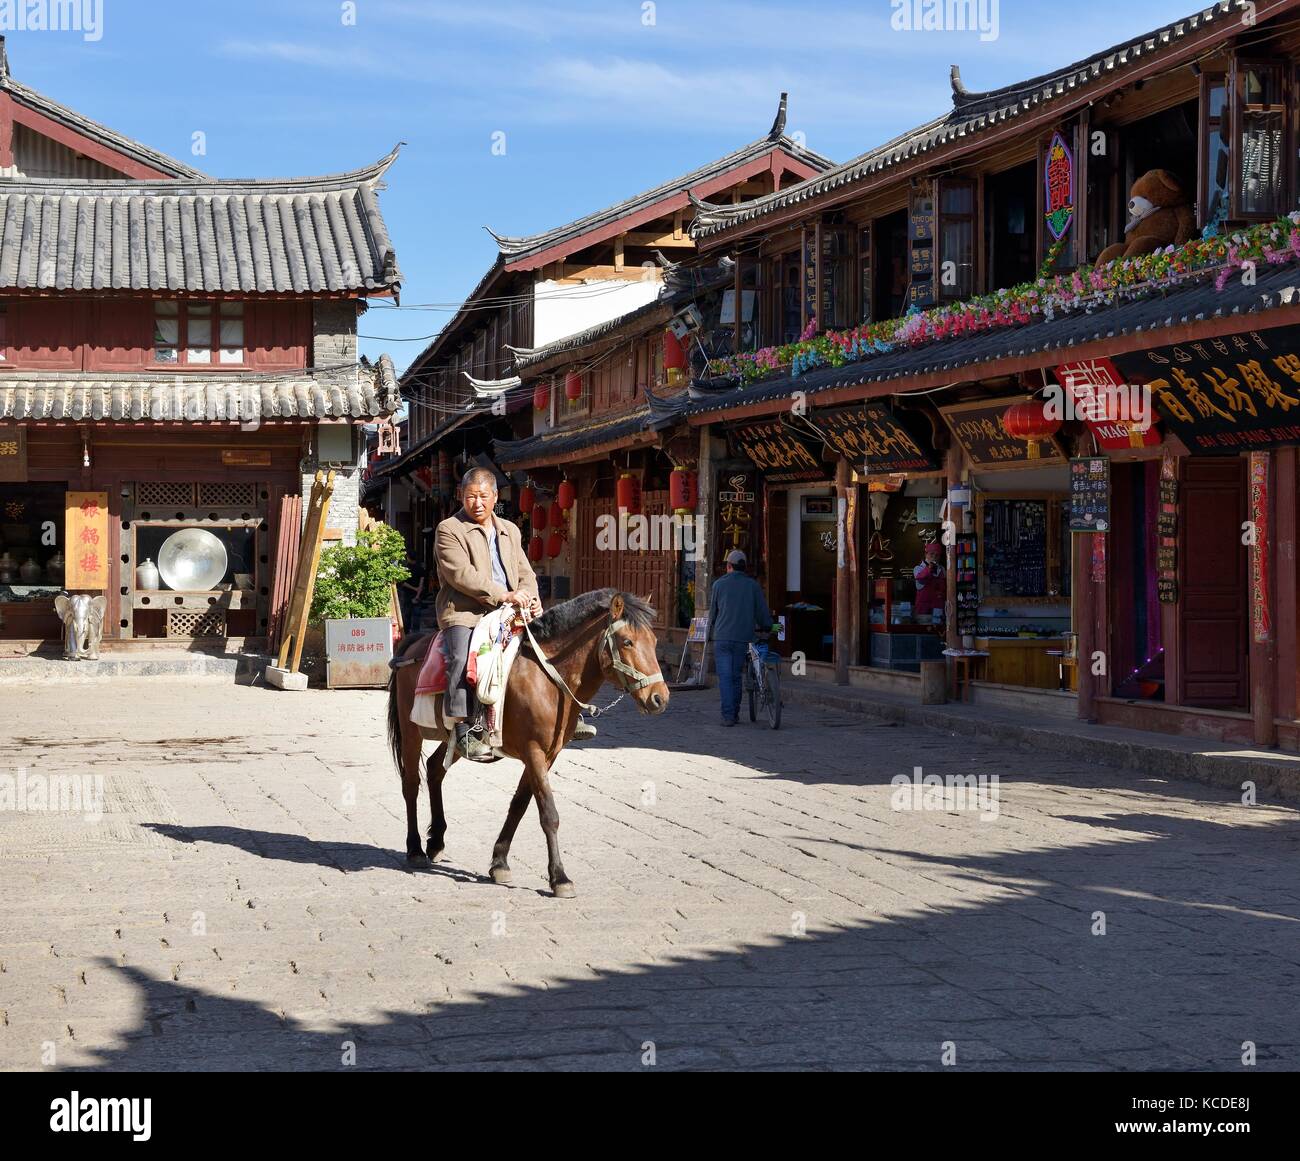 La vieille ville de Shuhe site du patrimoine mondial, la province du Yunnan, Chine. personnes ethniques naxi et marchand de chevaux site de l'ancienne culture Commercial Street scene à Lijiang Banque D'Images